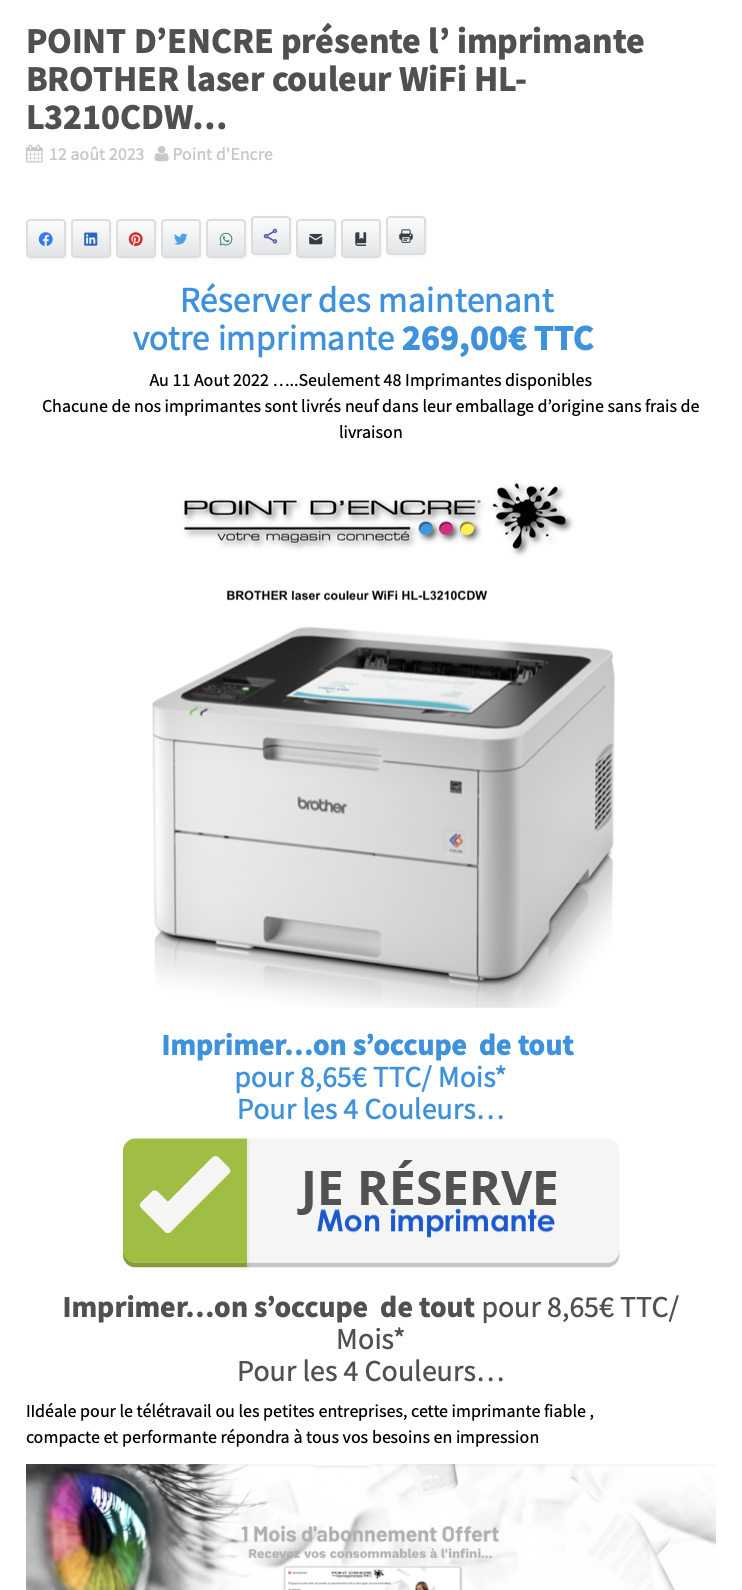 POINT D’ENCRE présente l’ imprimante BROTHER laser couleur WiFi HL-L3210CDW...